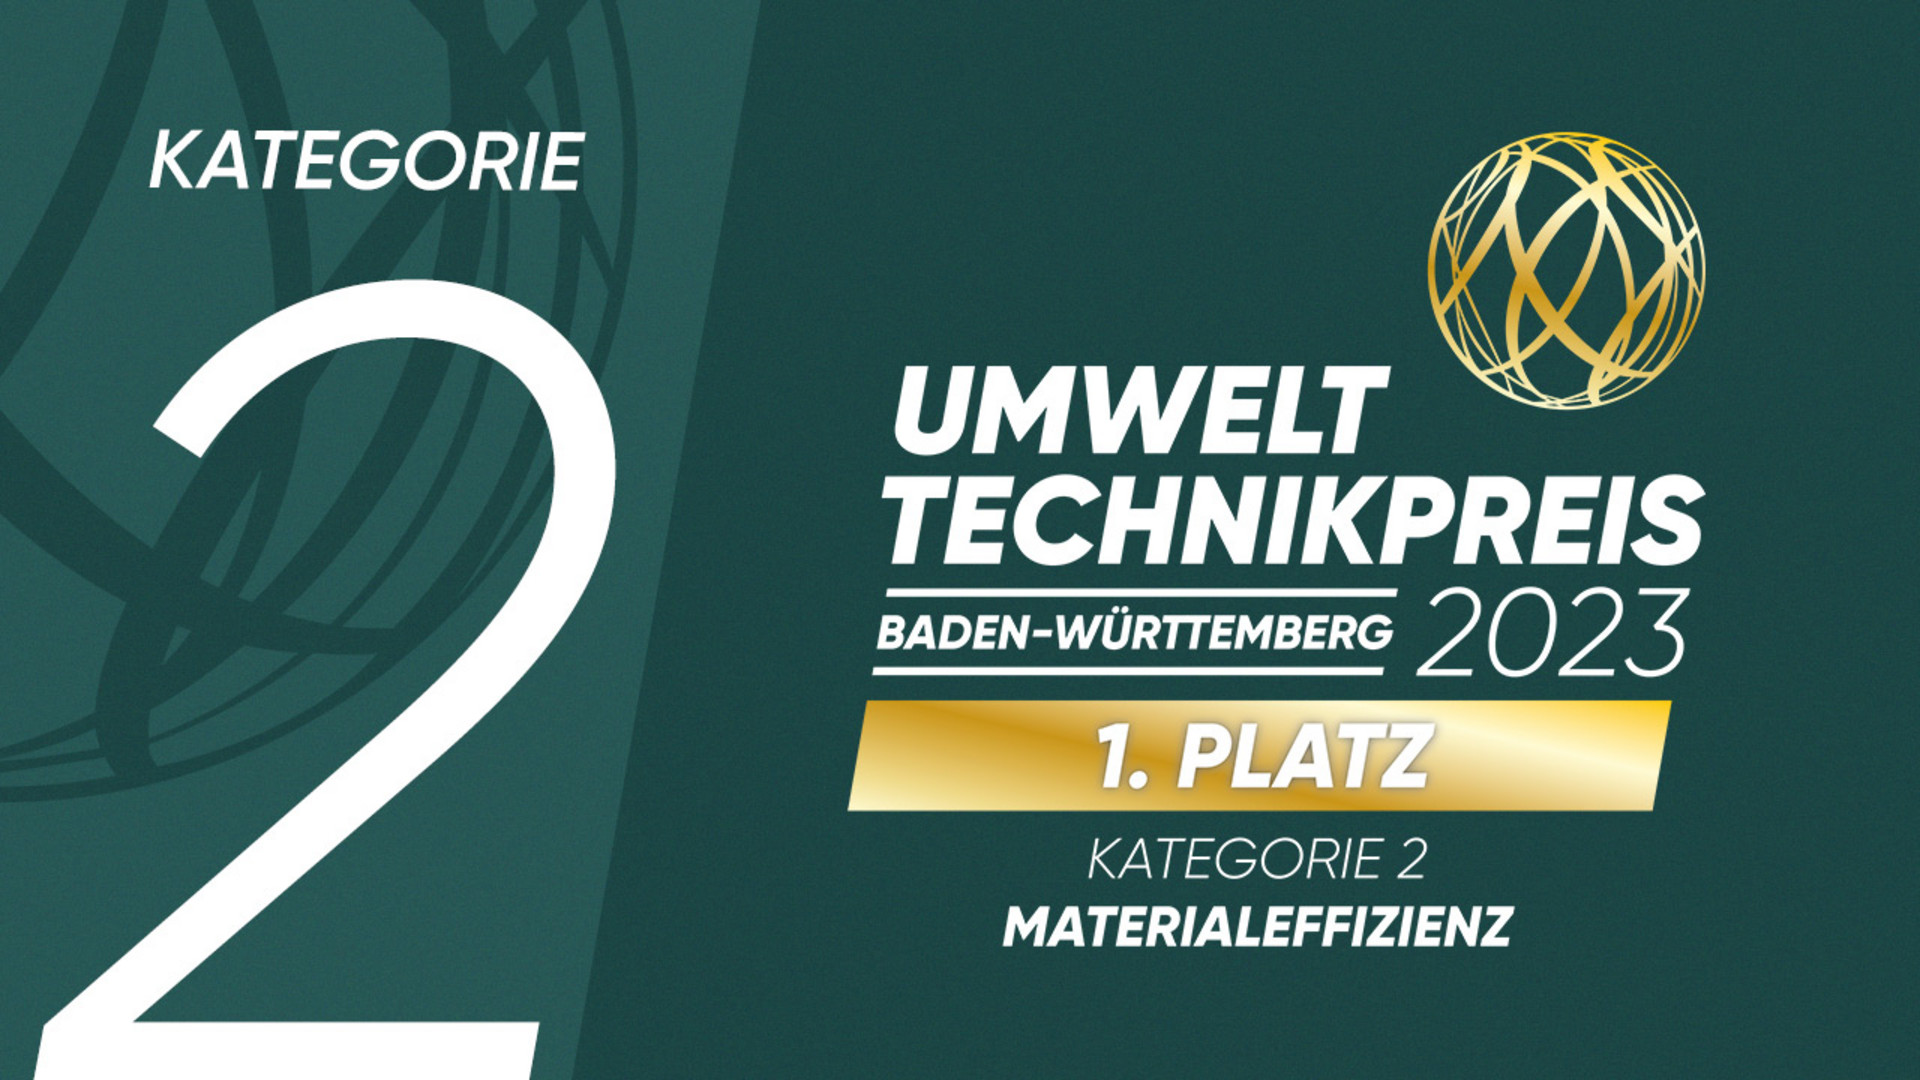 Umwelttechnikpreis Baden-Württemberg 2023: 1. Platz in der Kategorie 2 „Materialeffizienz“